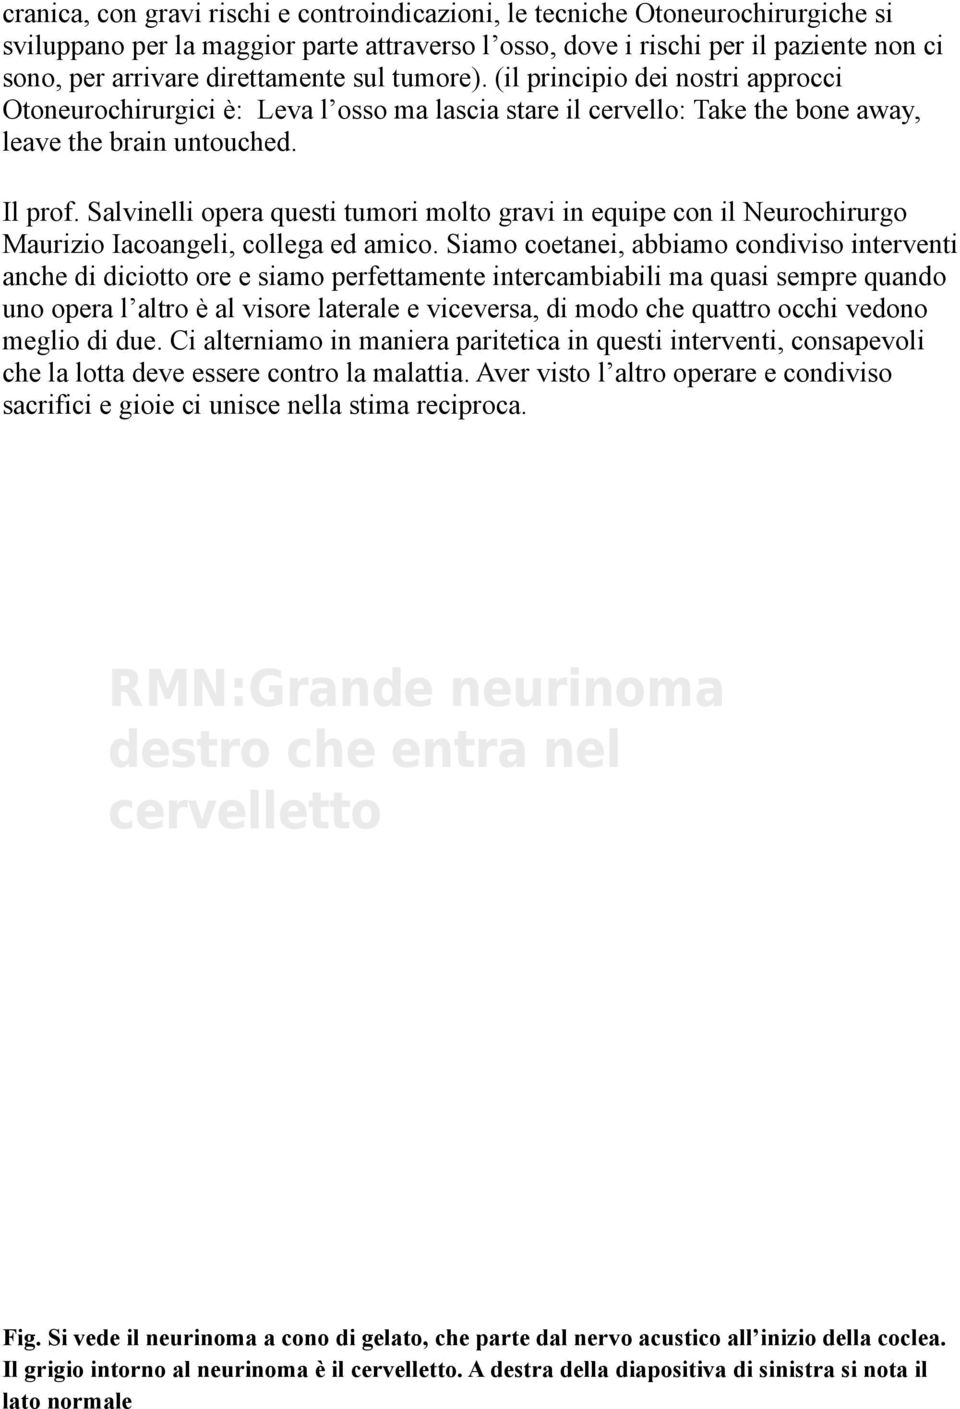 Salvinelli opera questi tumori molto gravi in equipe con il Neurochirurgo Maurizio Iacoangeli, collega ed amico.